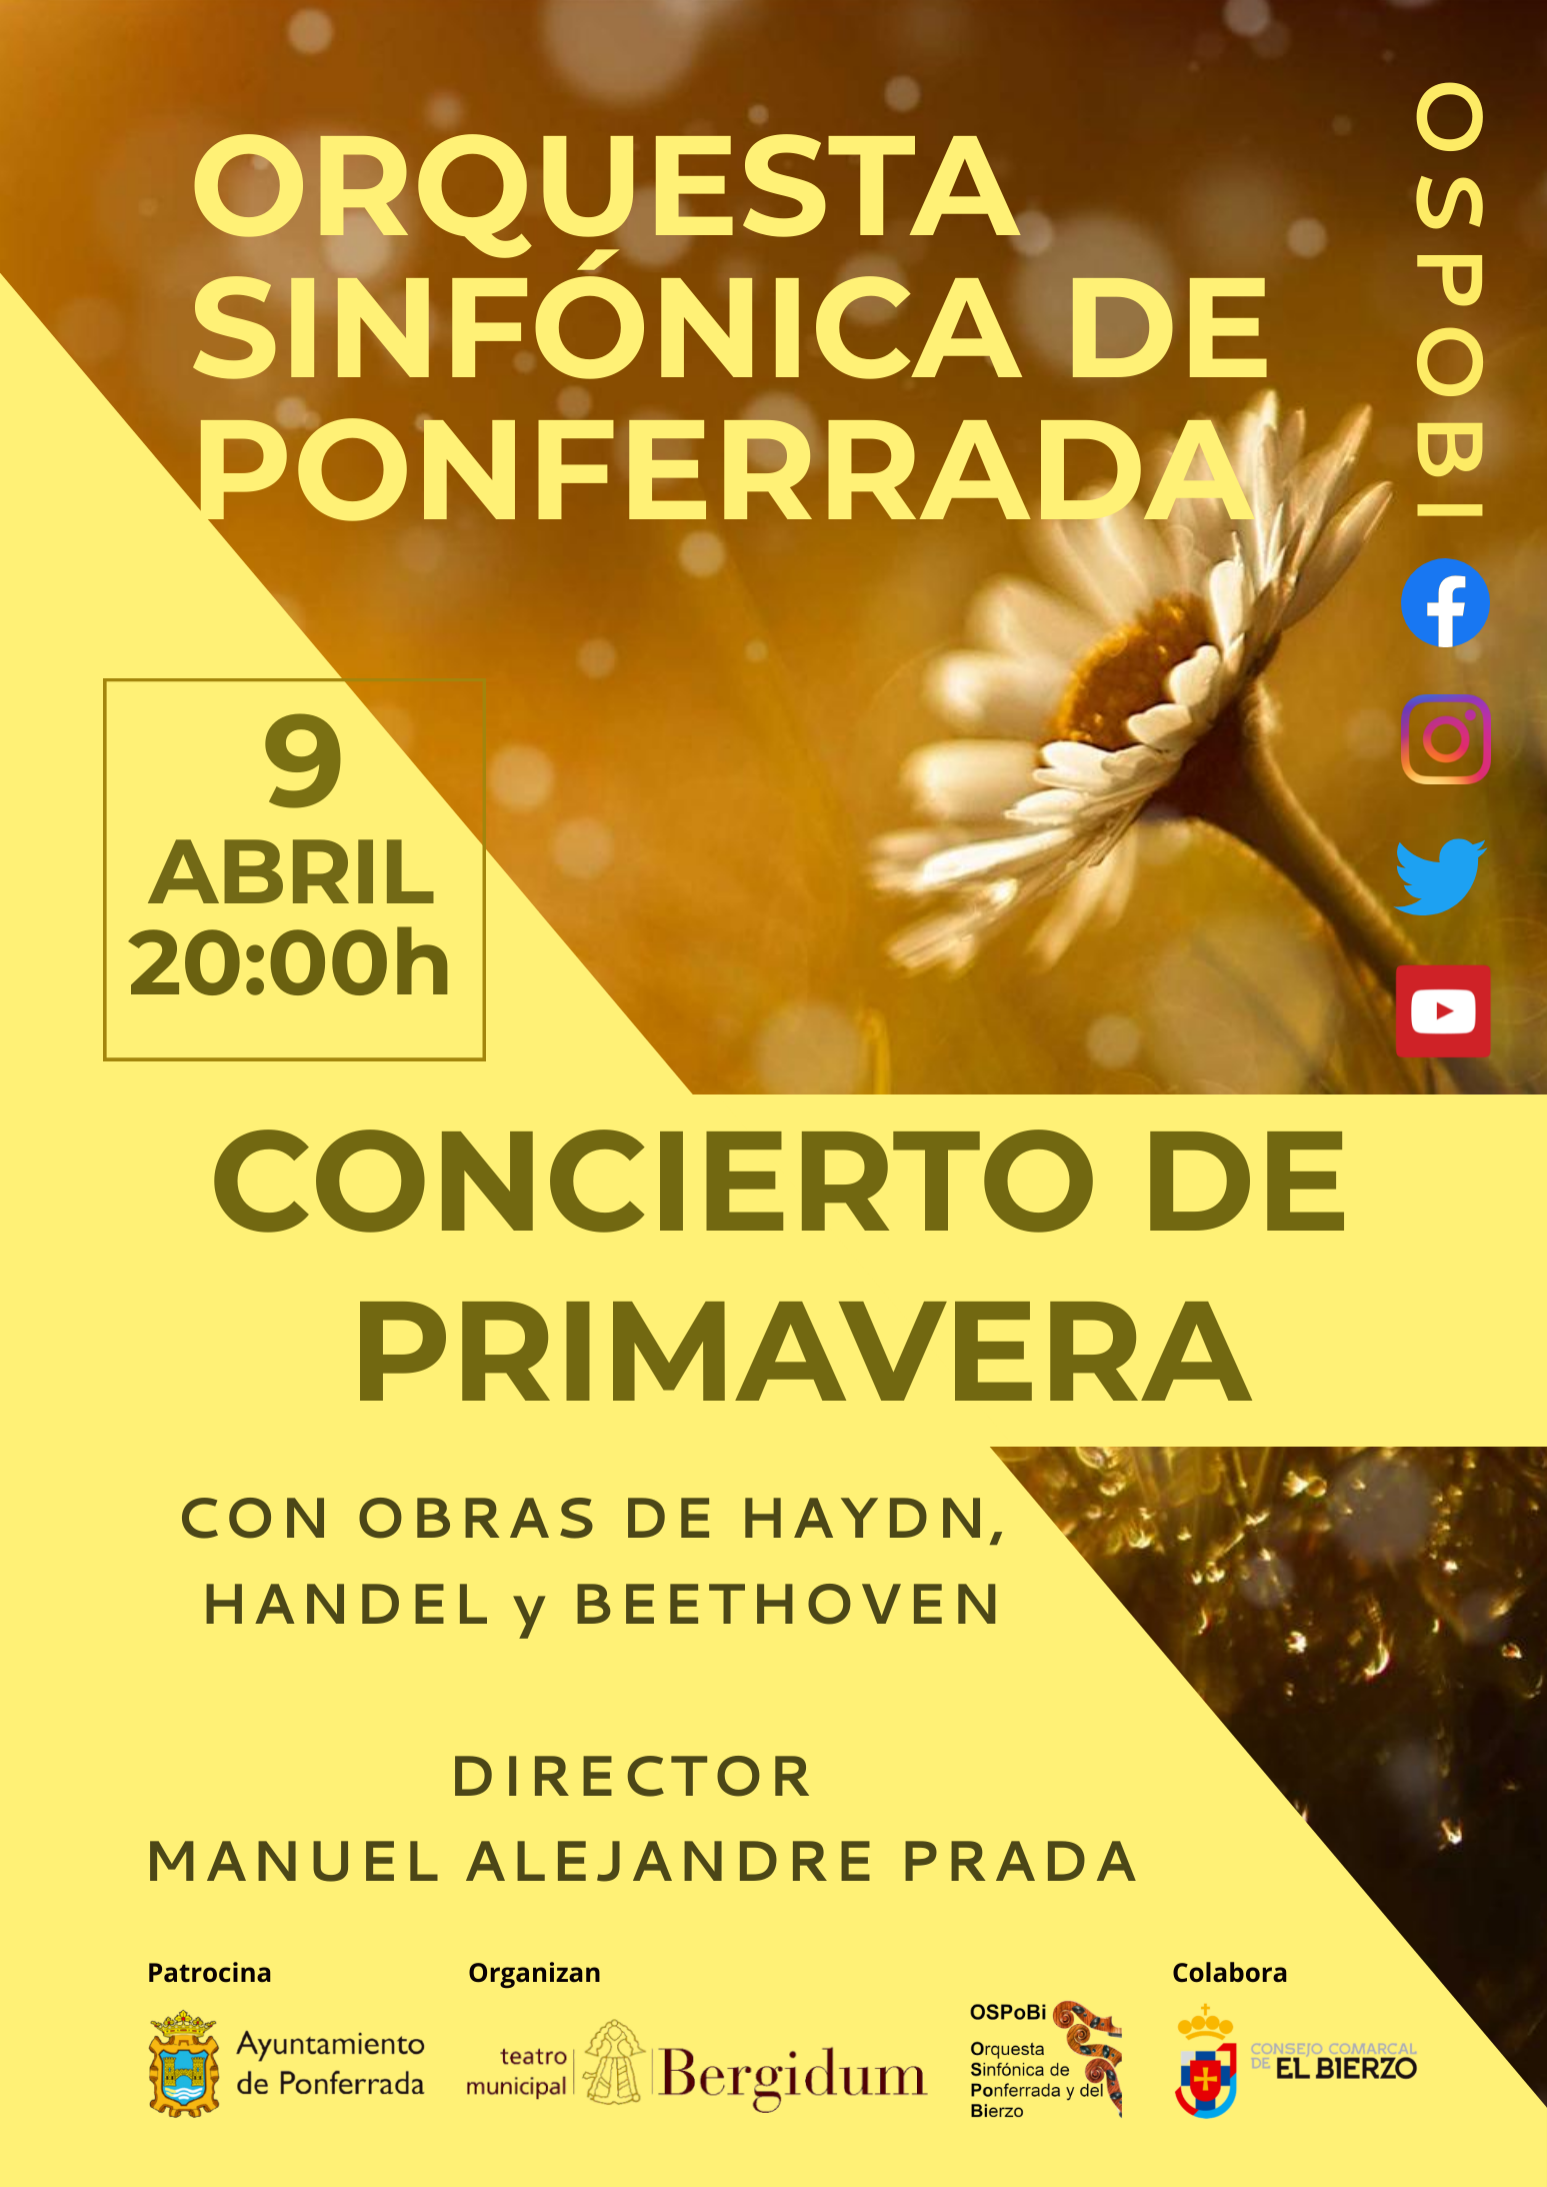 La Orquesta Sinfónica de Ponferrada interpreta en su Concierto de primavera piezas de, entre otros, Handel y Beethoven 2